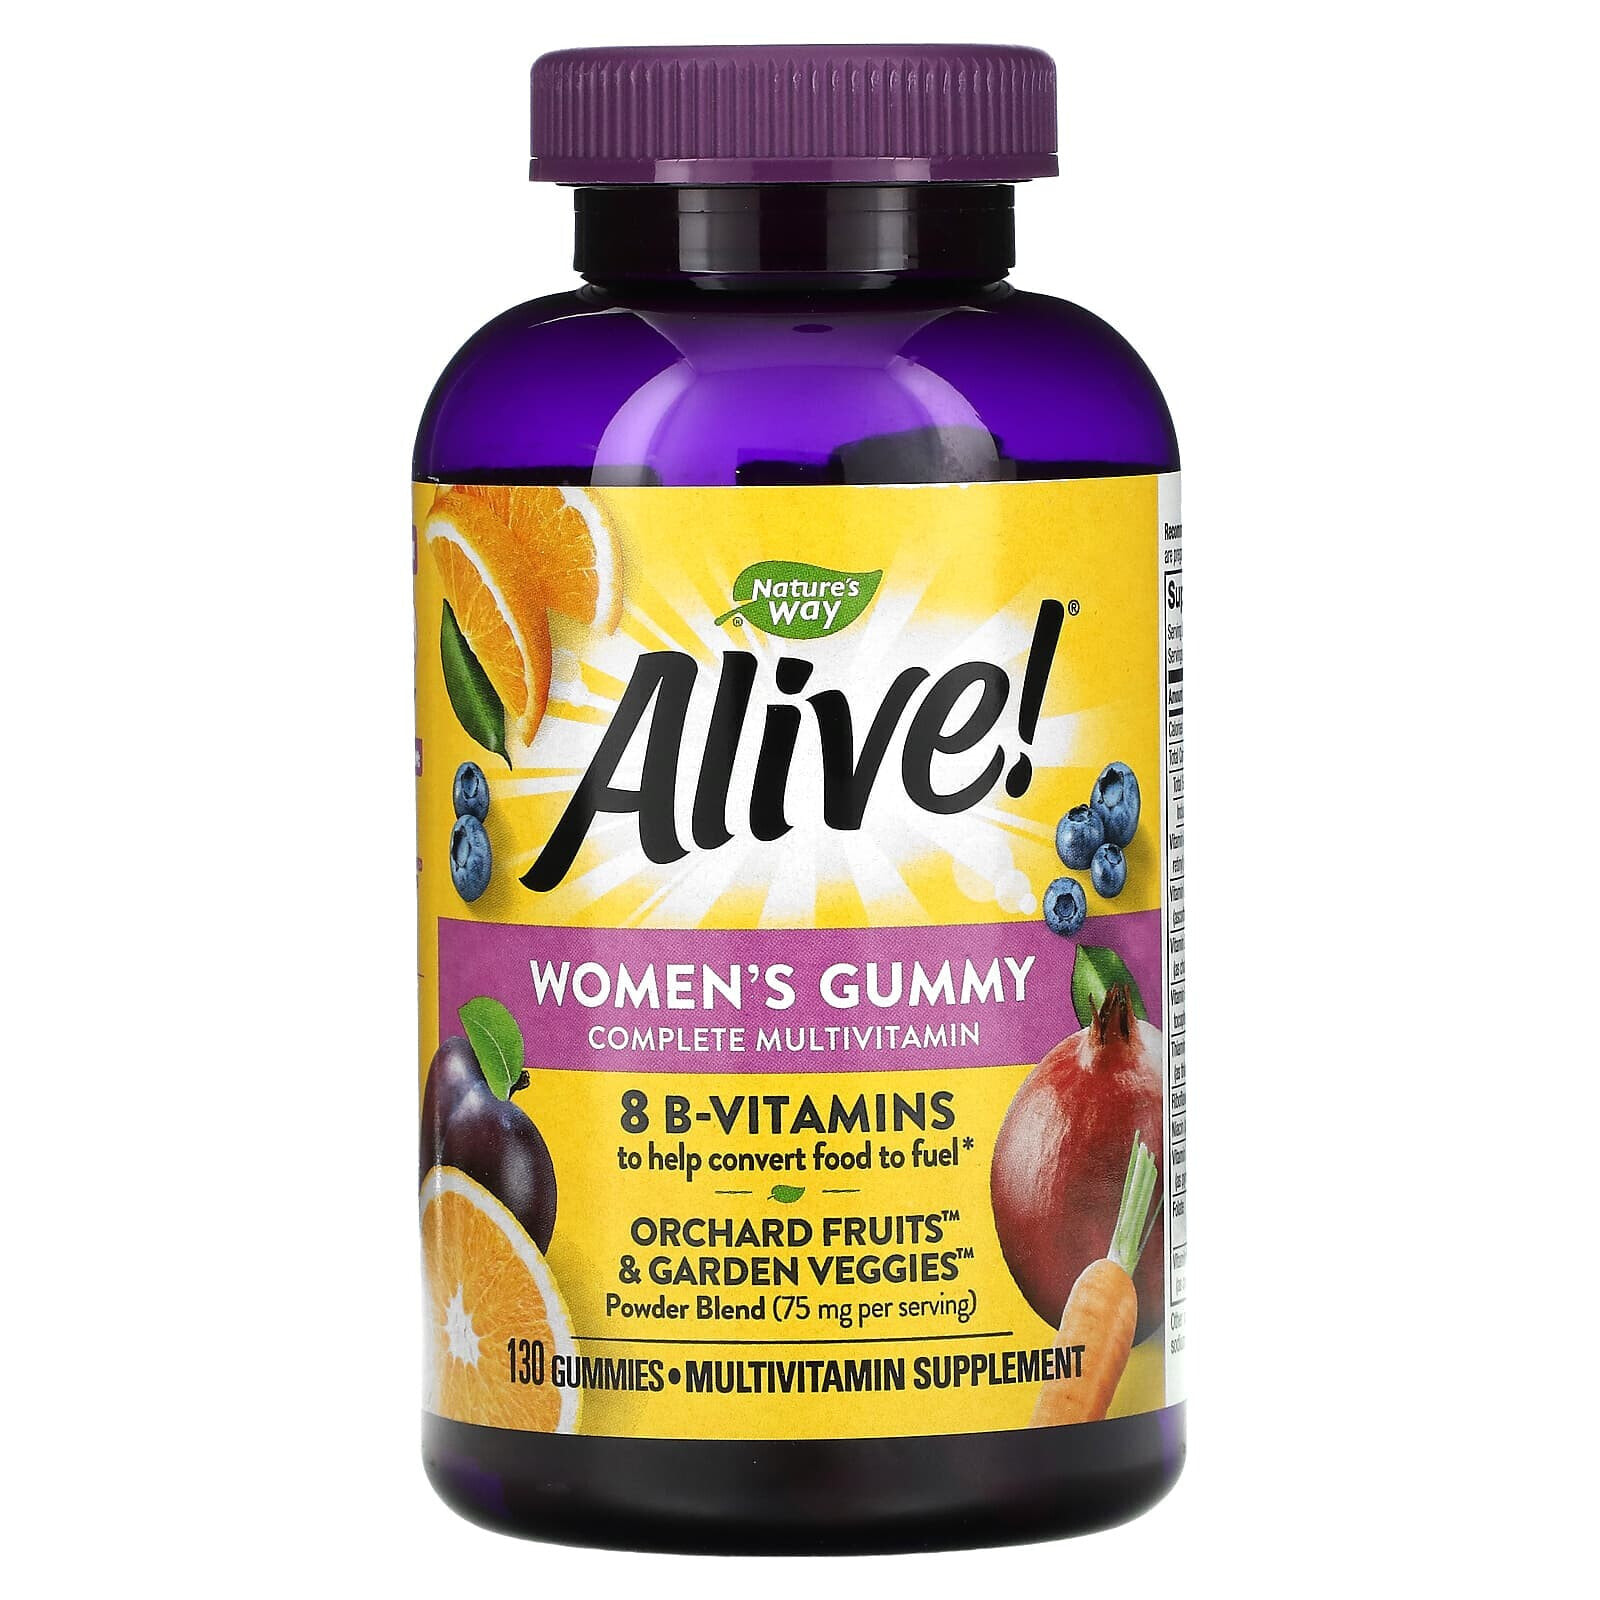 Nature's Way, Alive! Women's Gummy Complete Multivitamin, Mixed Berry Flavor, 60 Gummies